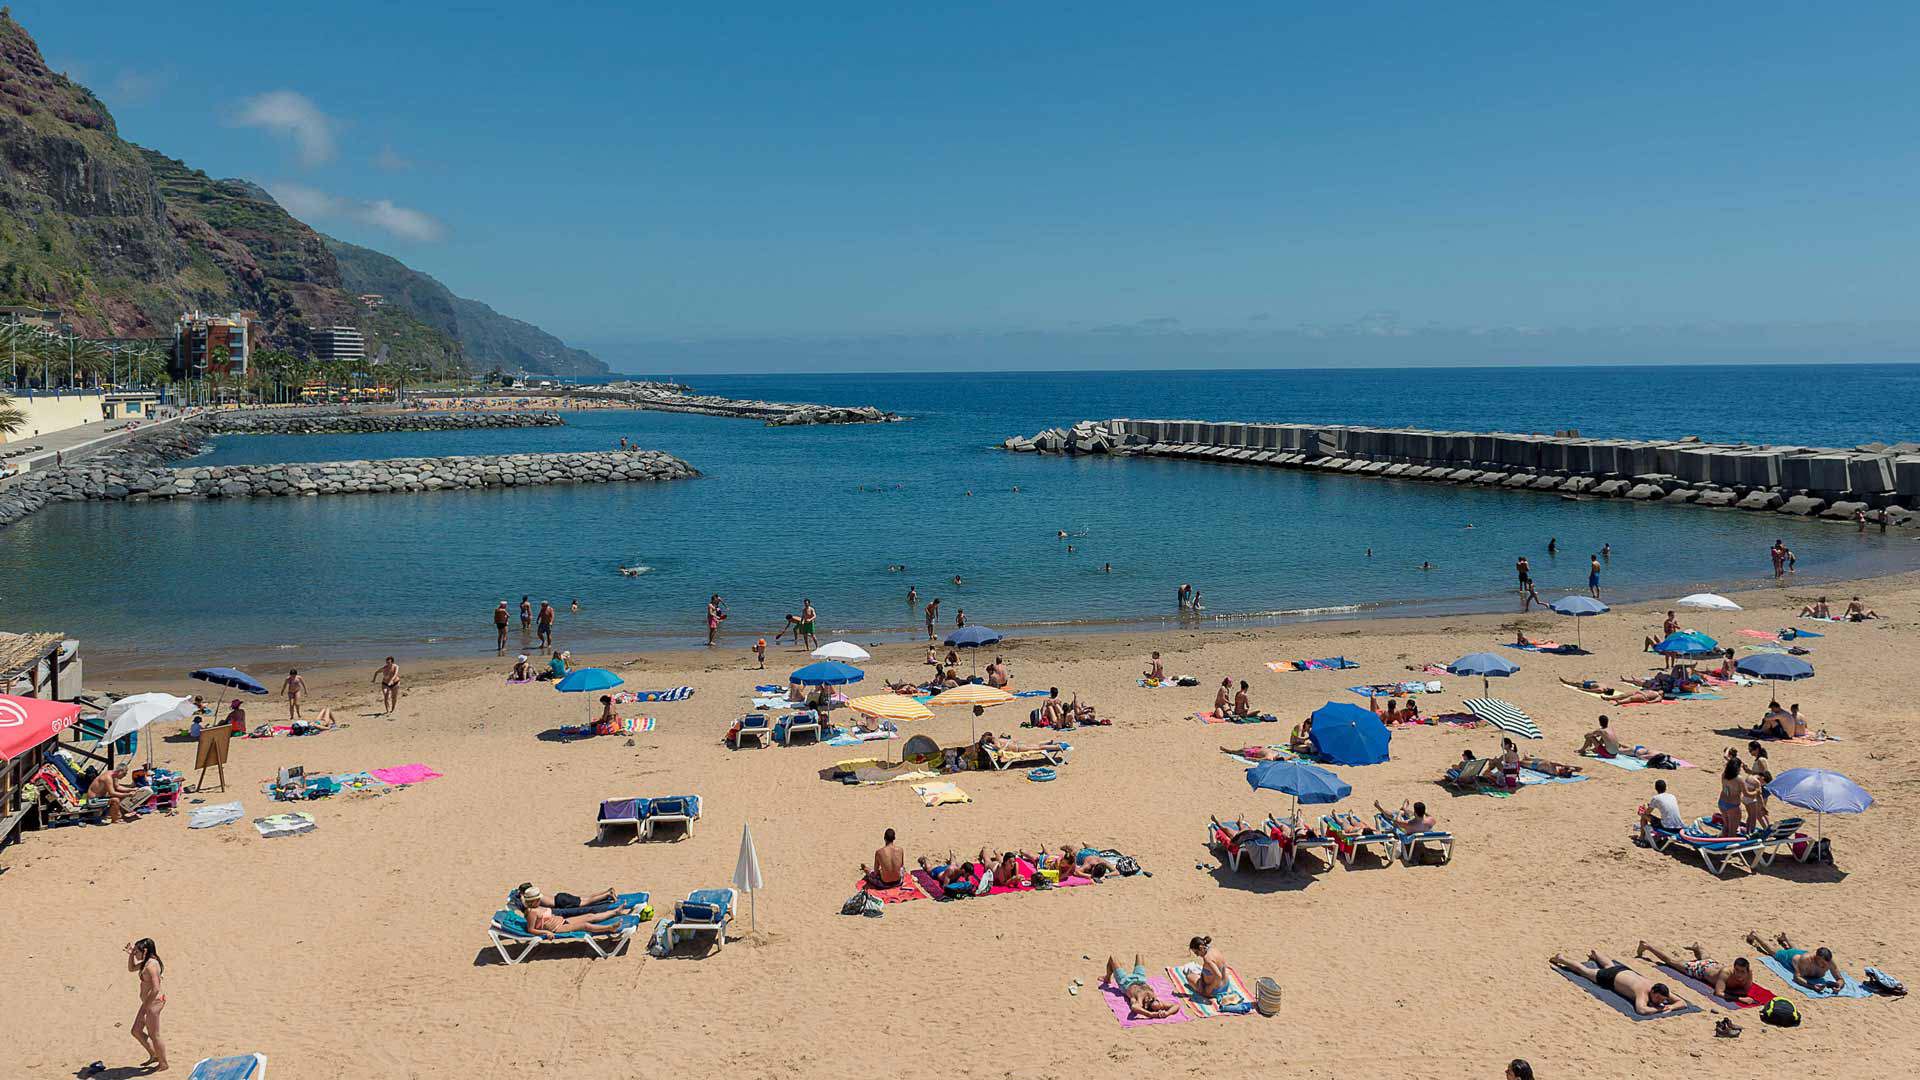 The Calheta beach in Madeira, Portugal.